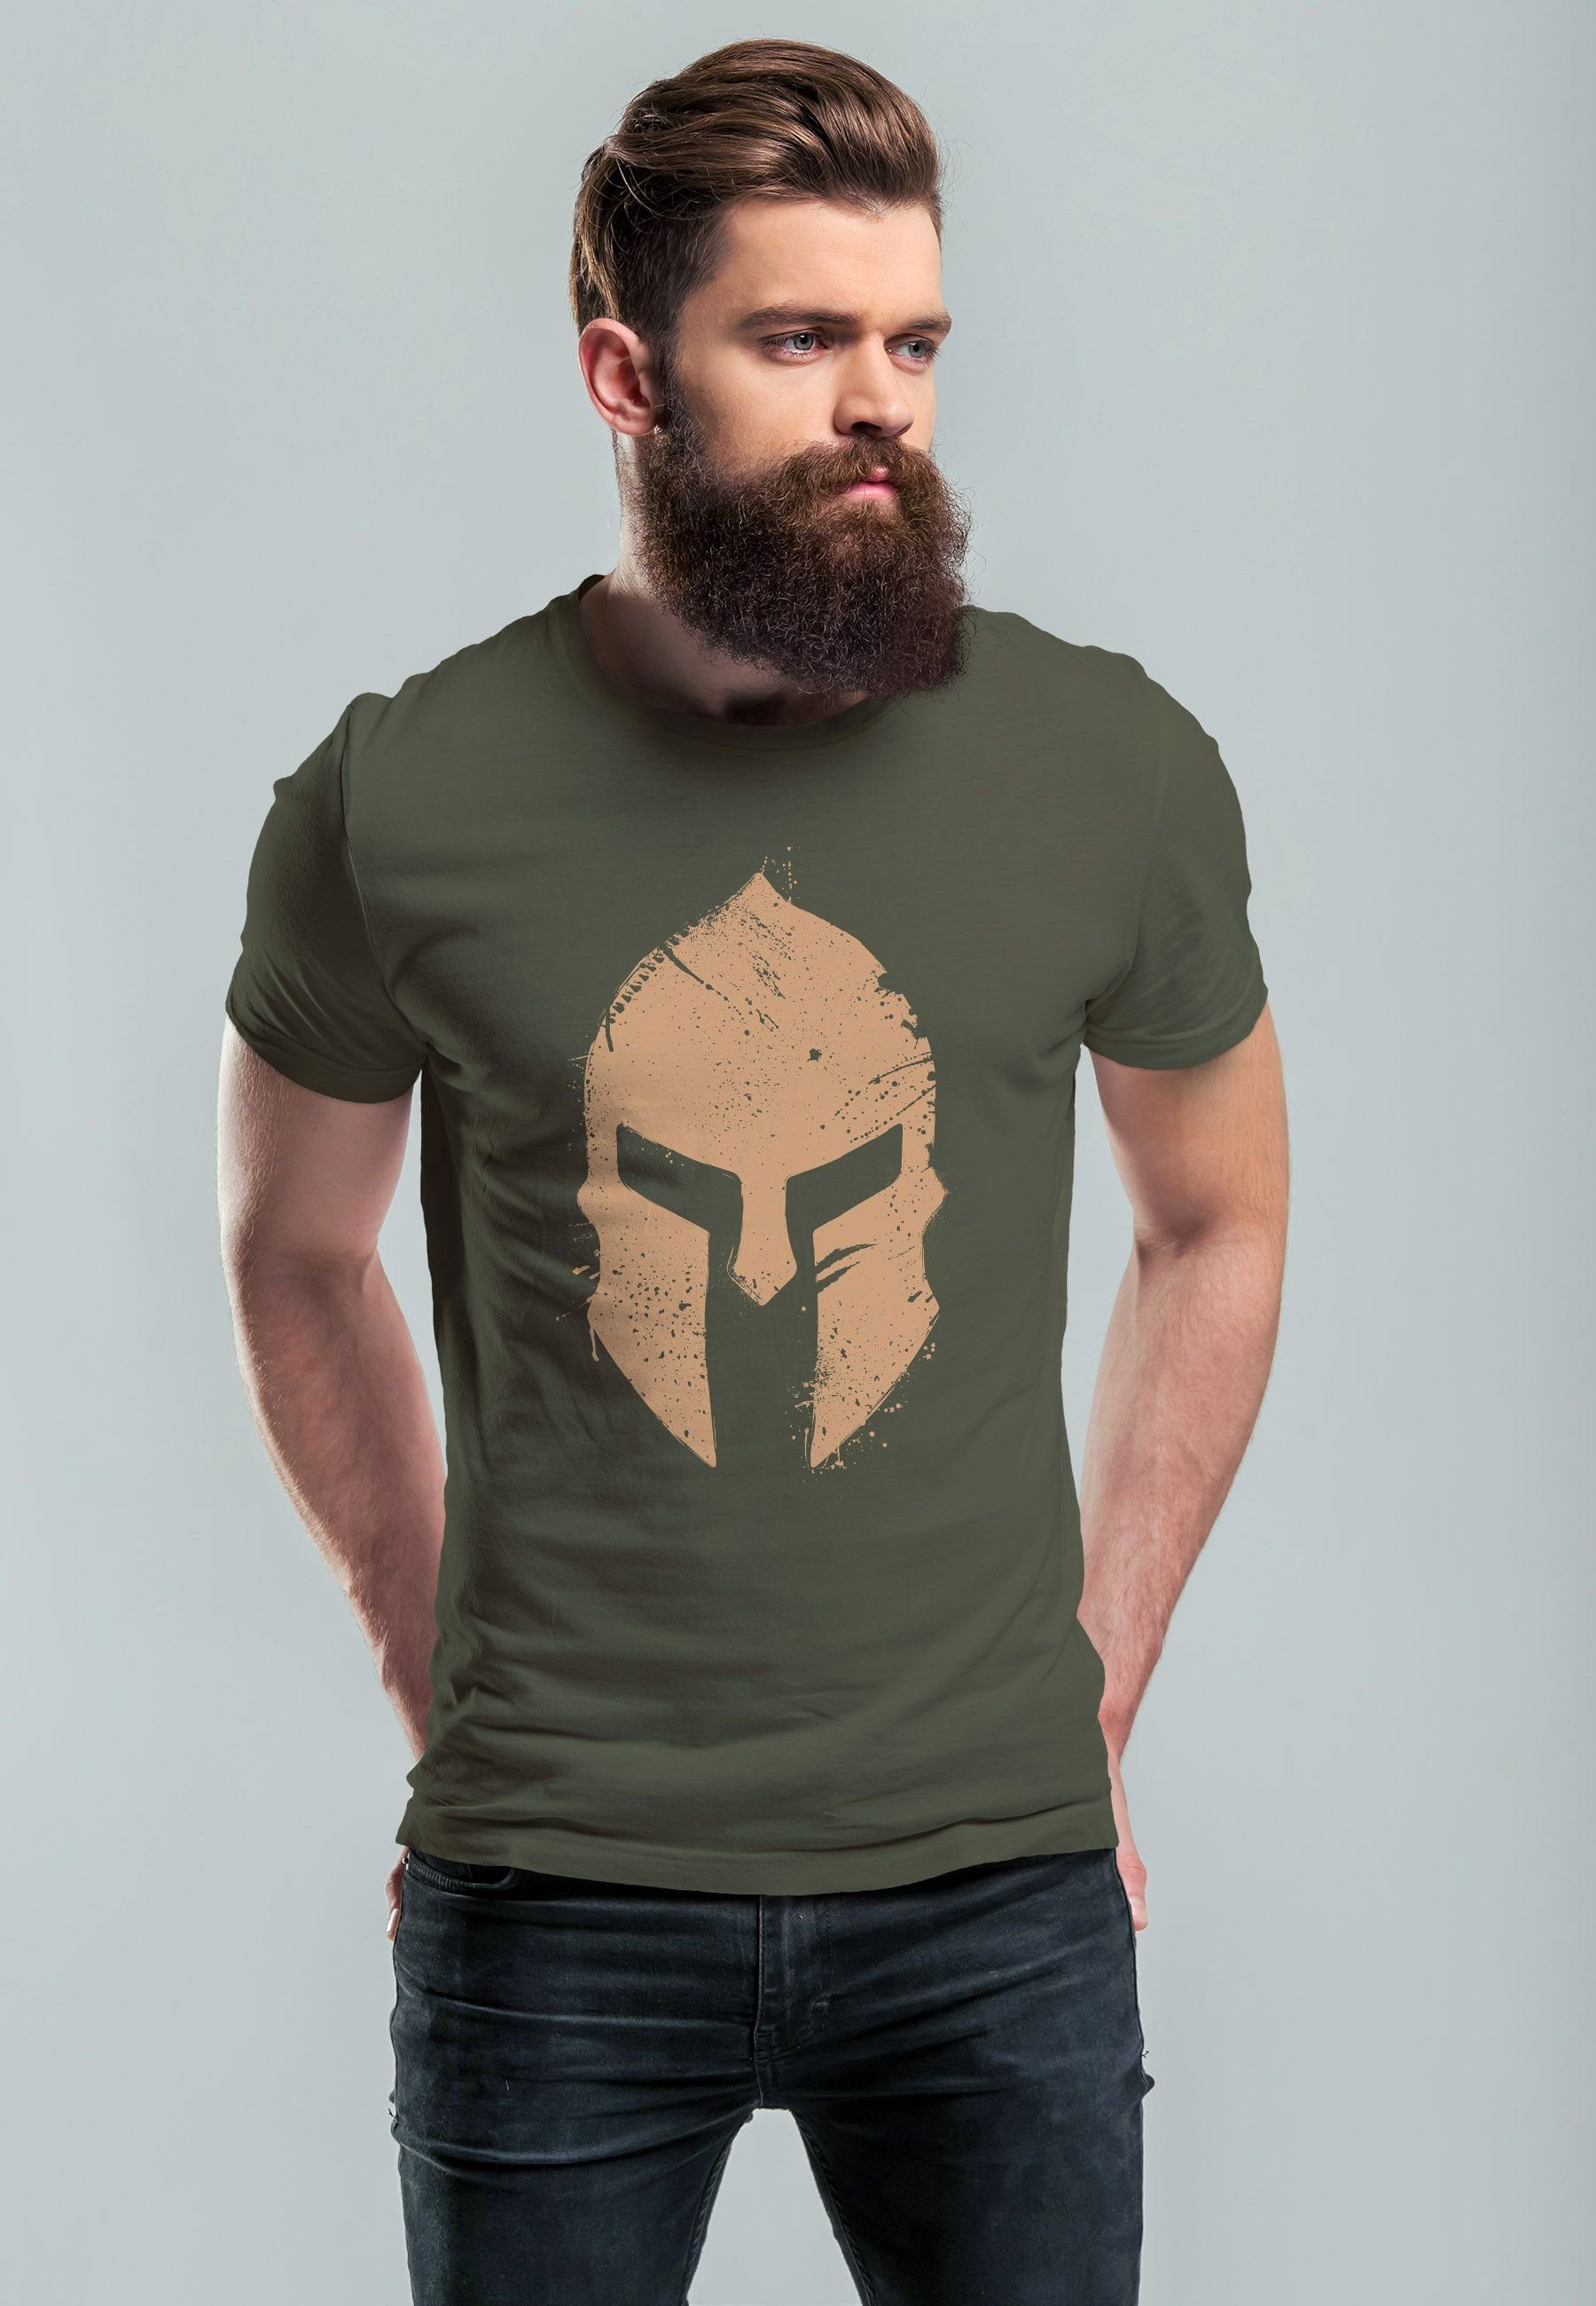 Neverless Print-Shirt Herren T-Shirt Print Sparta-Helm army Print mit Sp Aufdruck Gladiator Warrior Krieger